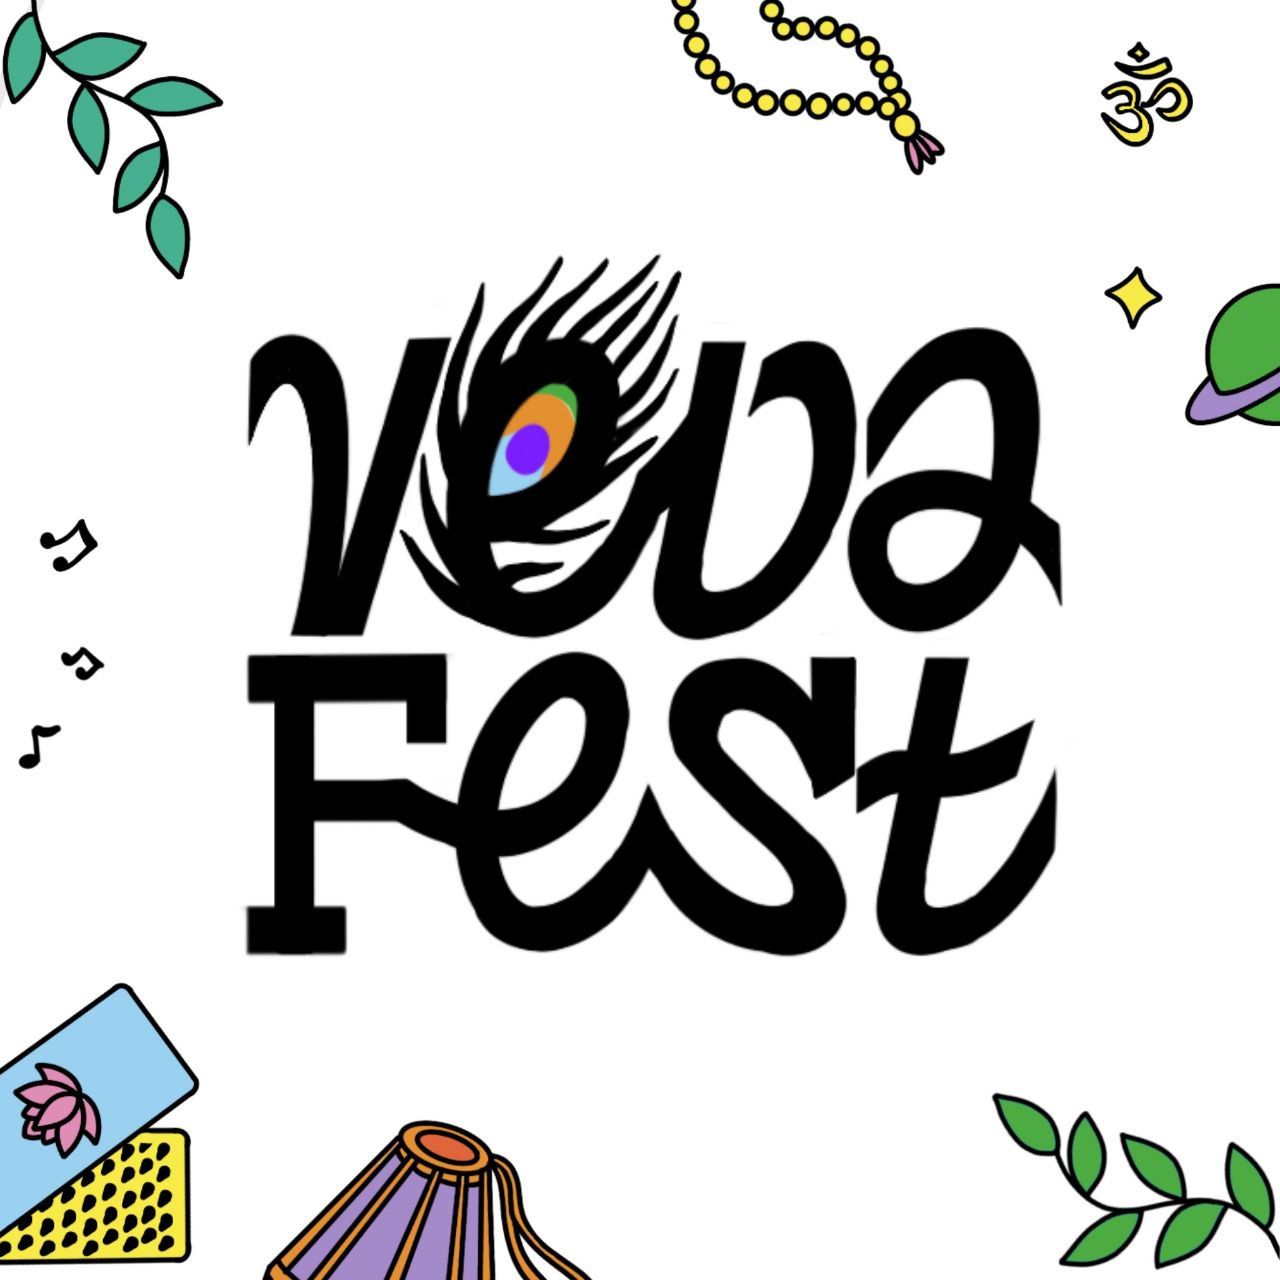 Veda Fest 3